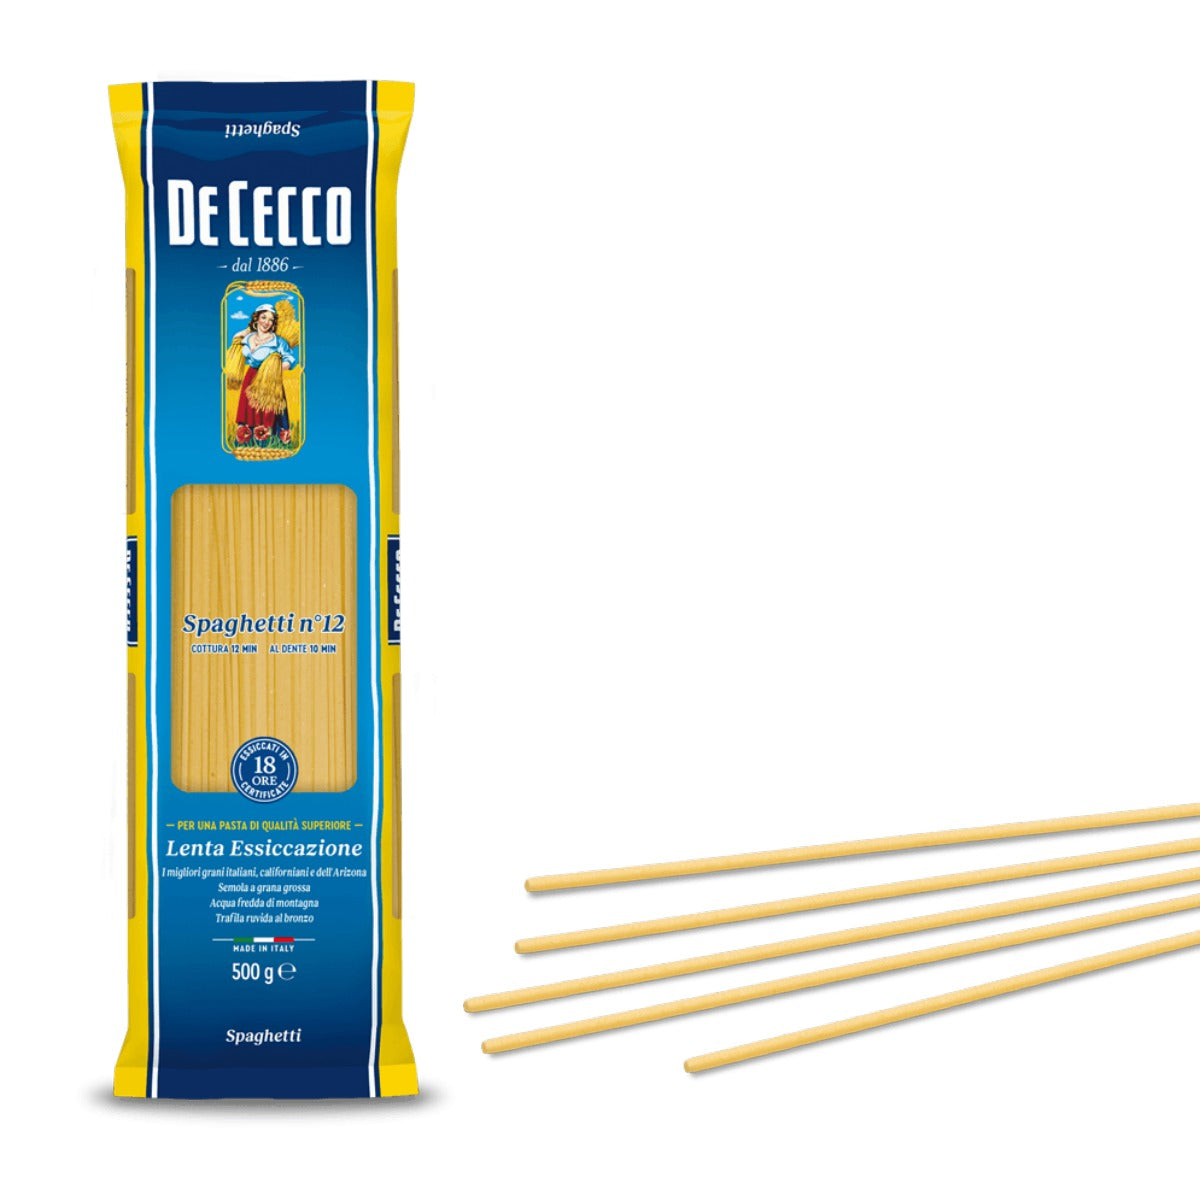 De Cecco Spaghetti no.12 - 500g Long Pasta – Italia Solutions UK